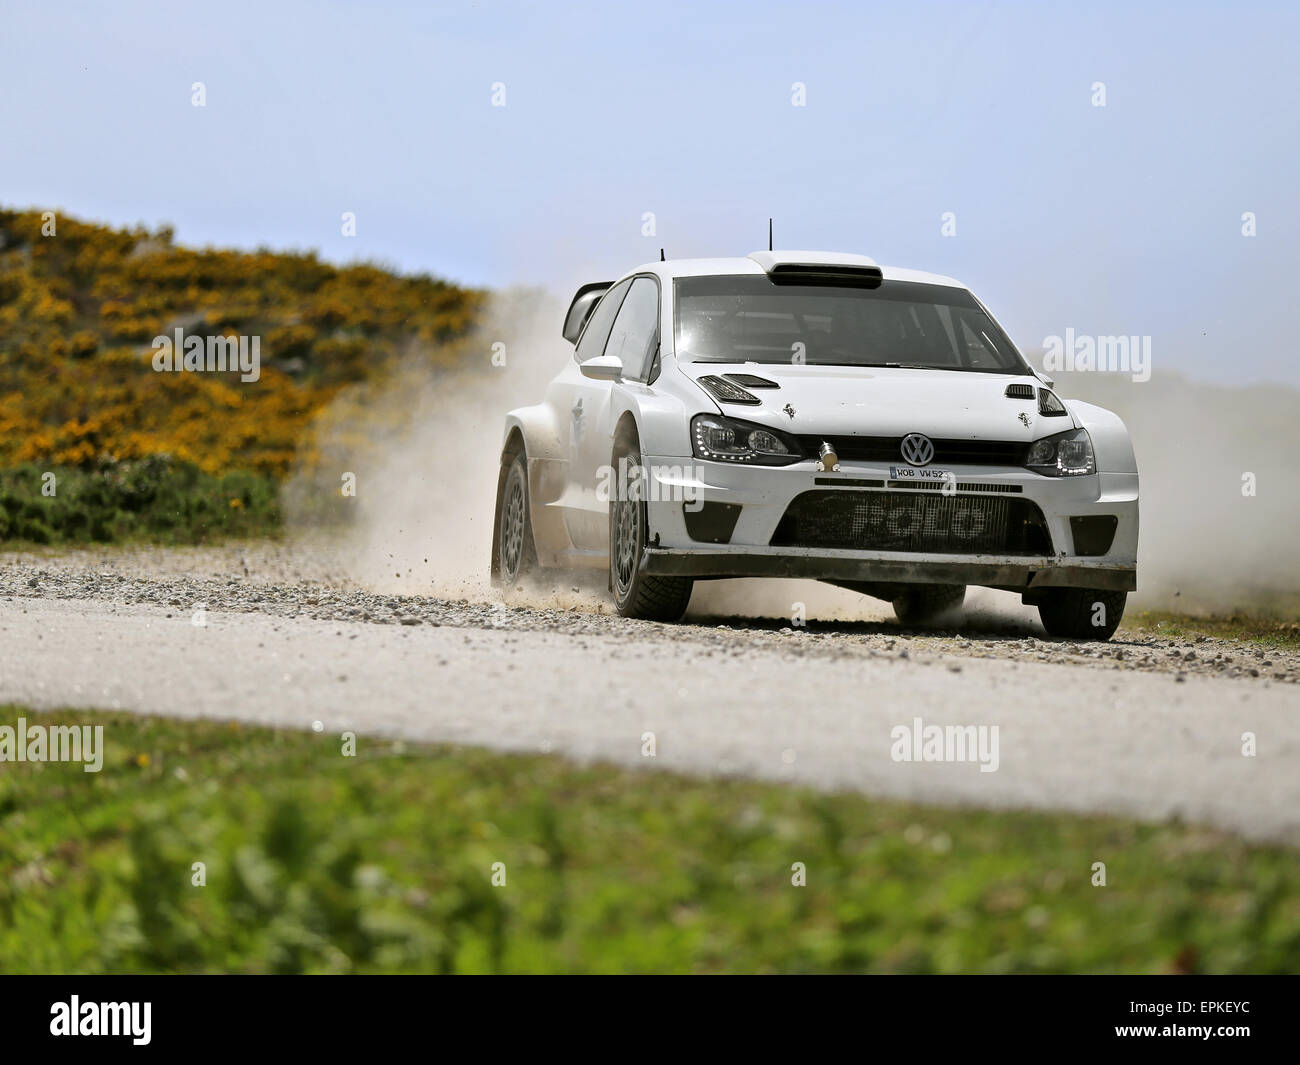 VIANA DO CASTELO, Portogallo - 12 Maggio: Volkswagen Polo R WRC in fase di test per il Rally del Portogallo a Viana do Castelo, Portogallo, 12 maggio 2016. Foto Stock